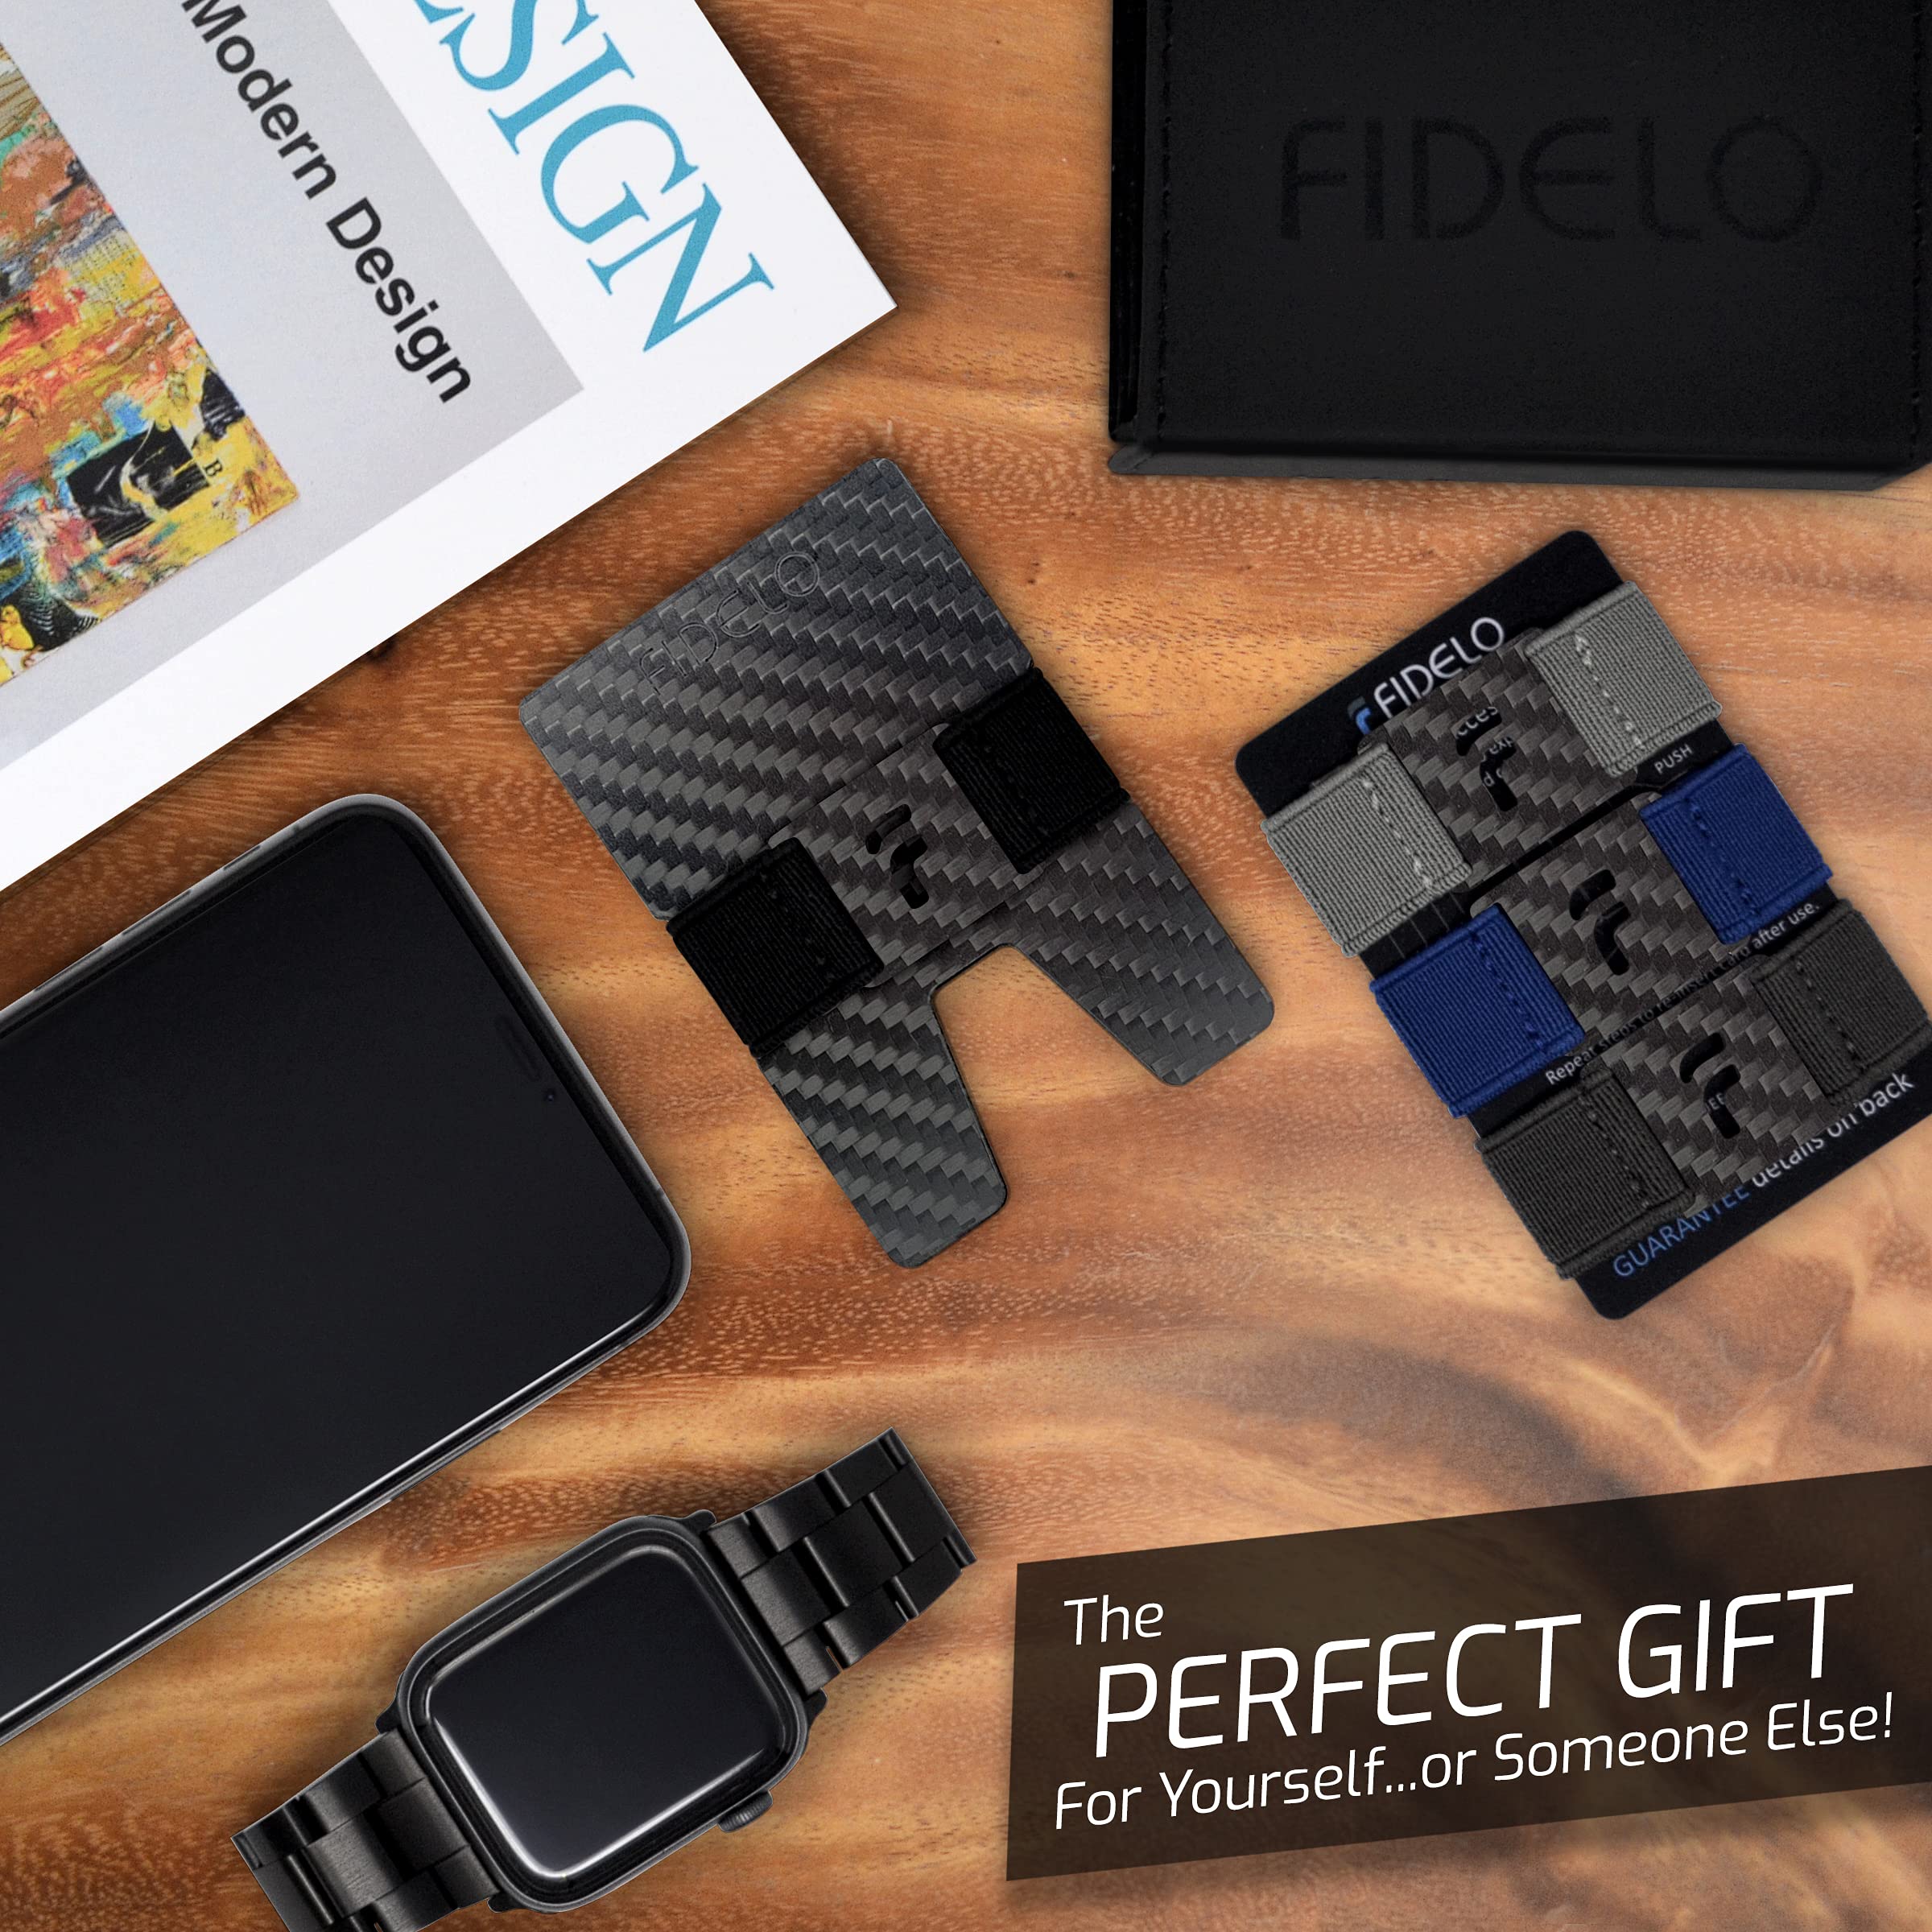 Fidelo Minimalist Wallet For Men - Slim RFID Blocking Mens Wallets Credit Card Holder. 3K Carbon Fiber. Compact Wallet Comes With 4 Cash Bands (Black, Dark Grey, Light Grey & Blue) - Prestige